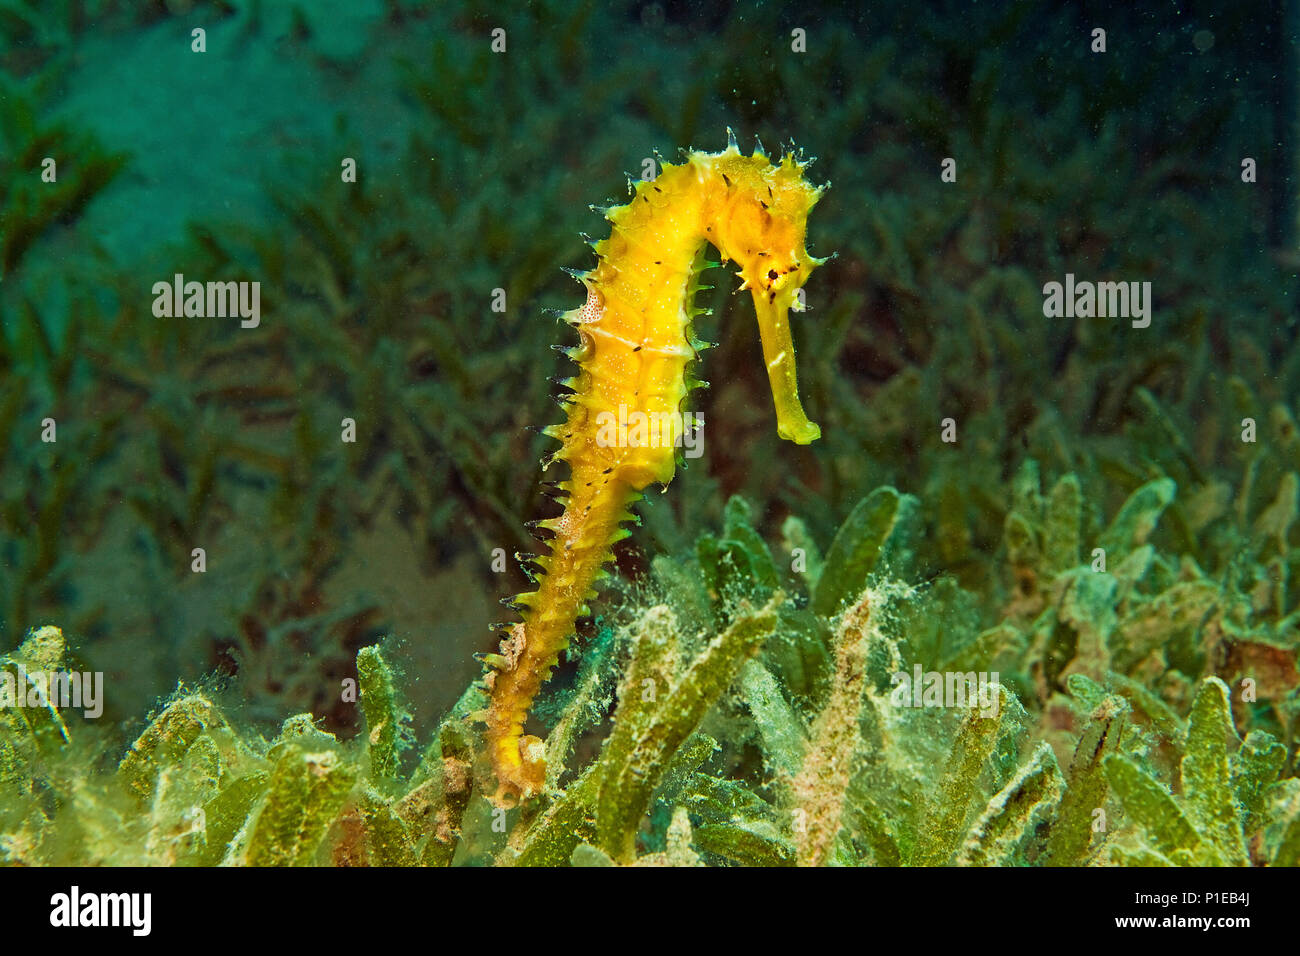 Cavalluccio marino spinosa (ippocampo jayakari) in mare di erba, Marsa Alam, Egitto, Mar Rosso Foto Stock